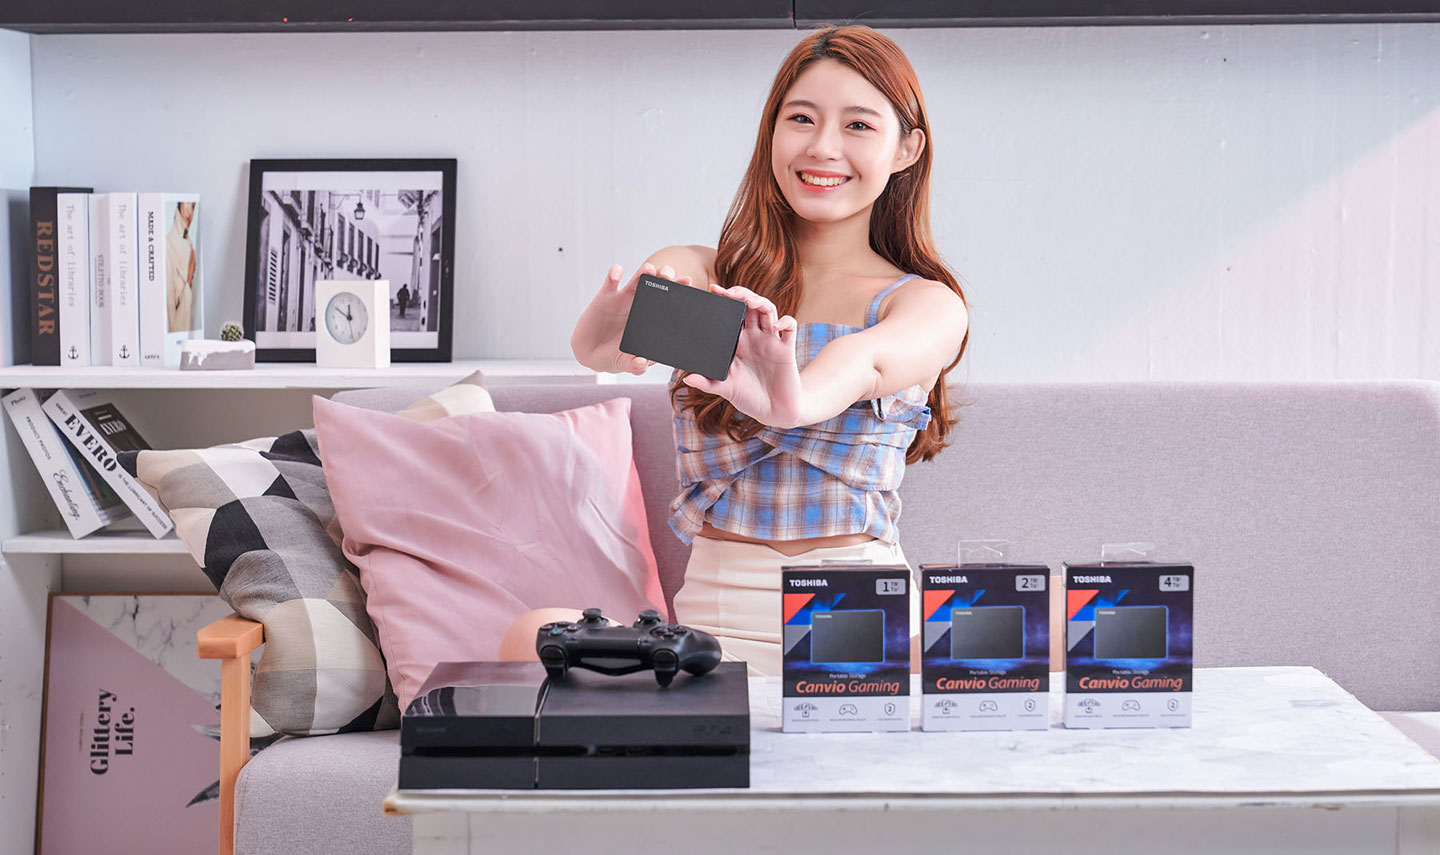 Toshiba CANVIO Gaming 提供 1TB、2TB 與 4TB 三種容量規格可以選擇。